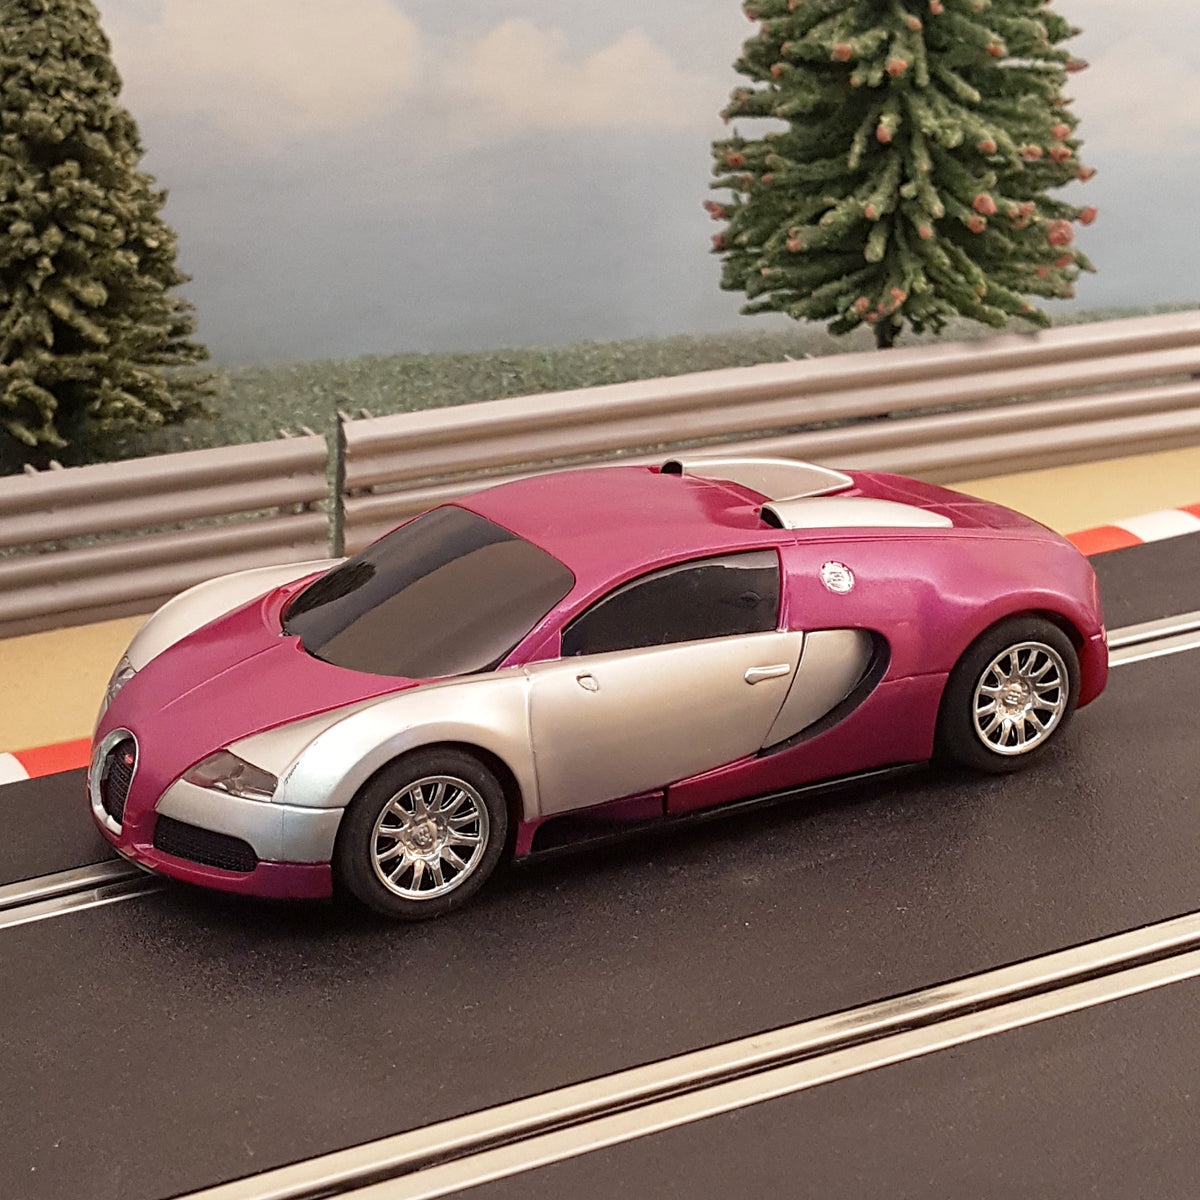 Juego de pistas Scalextric Sport 1:32 - Diseño con coches Bugatti Veyron #AS1 